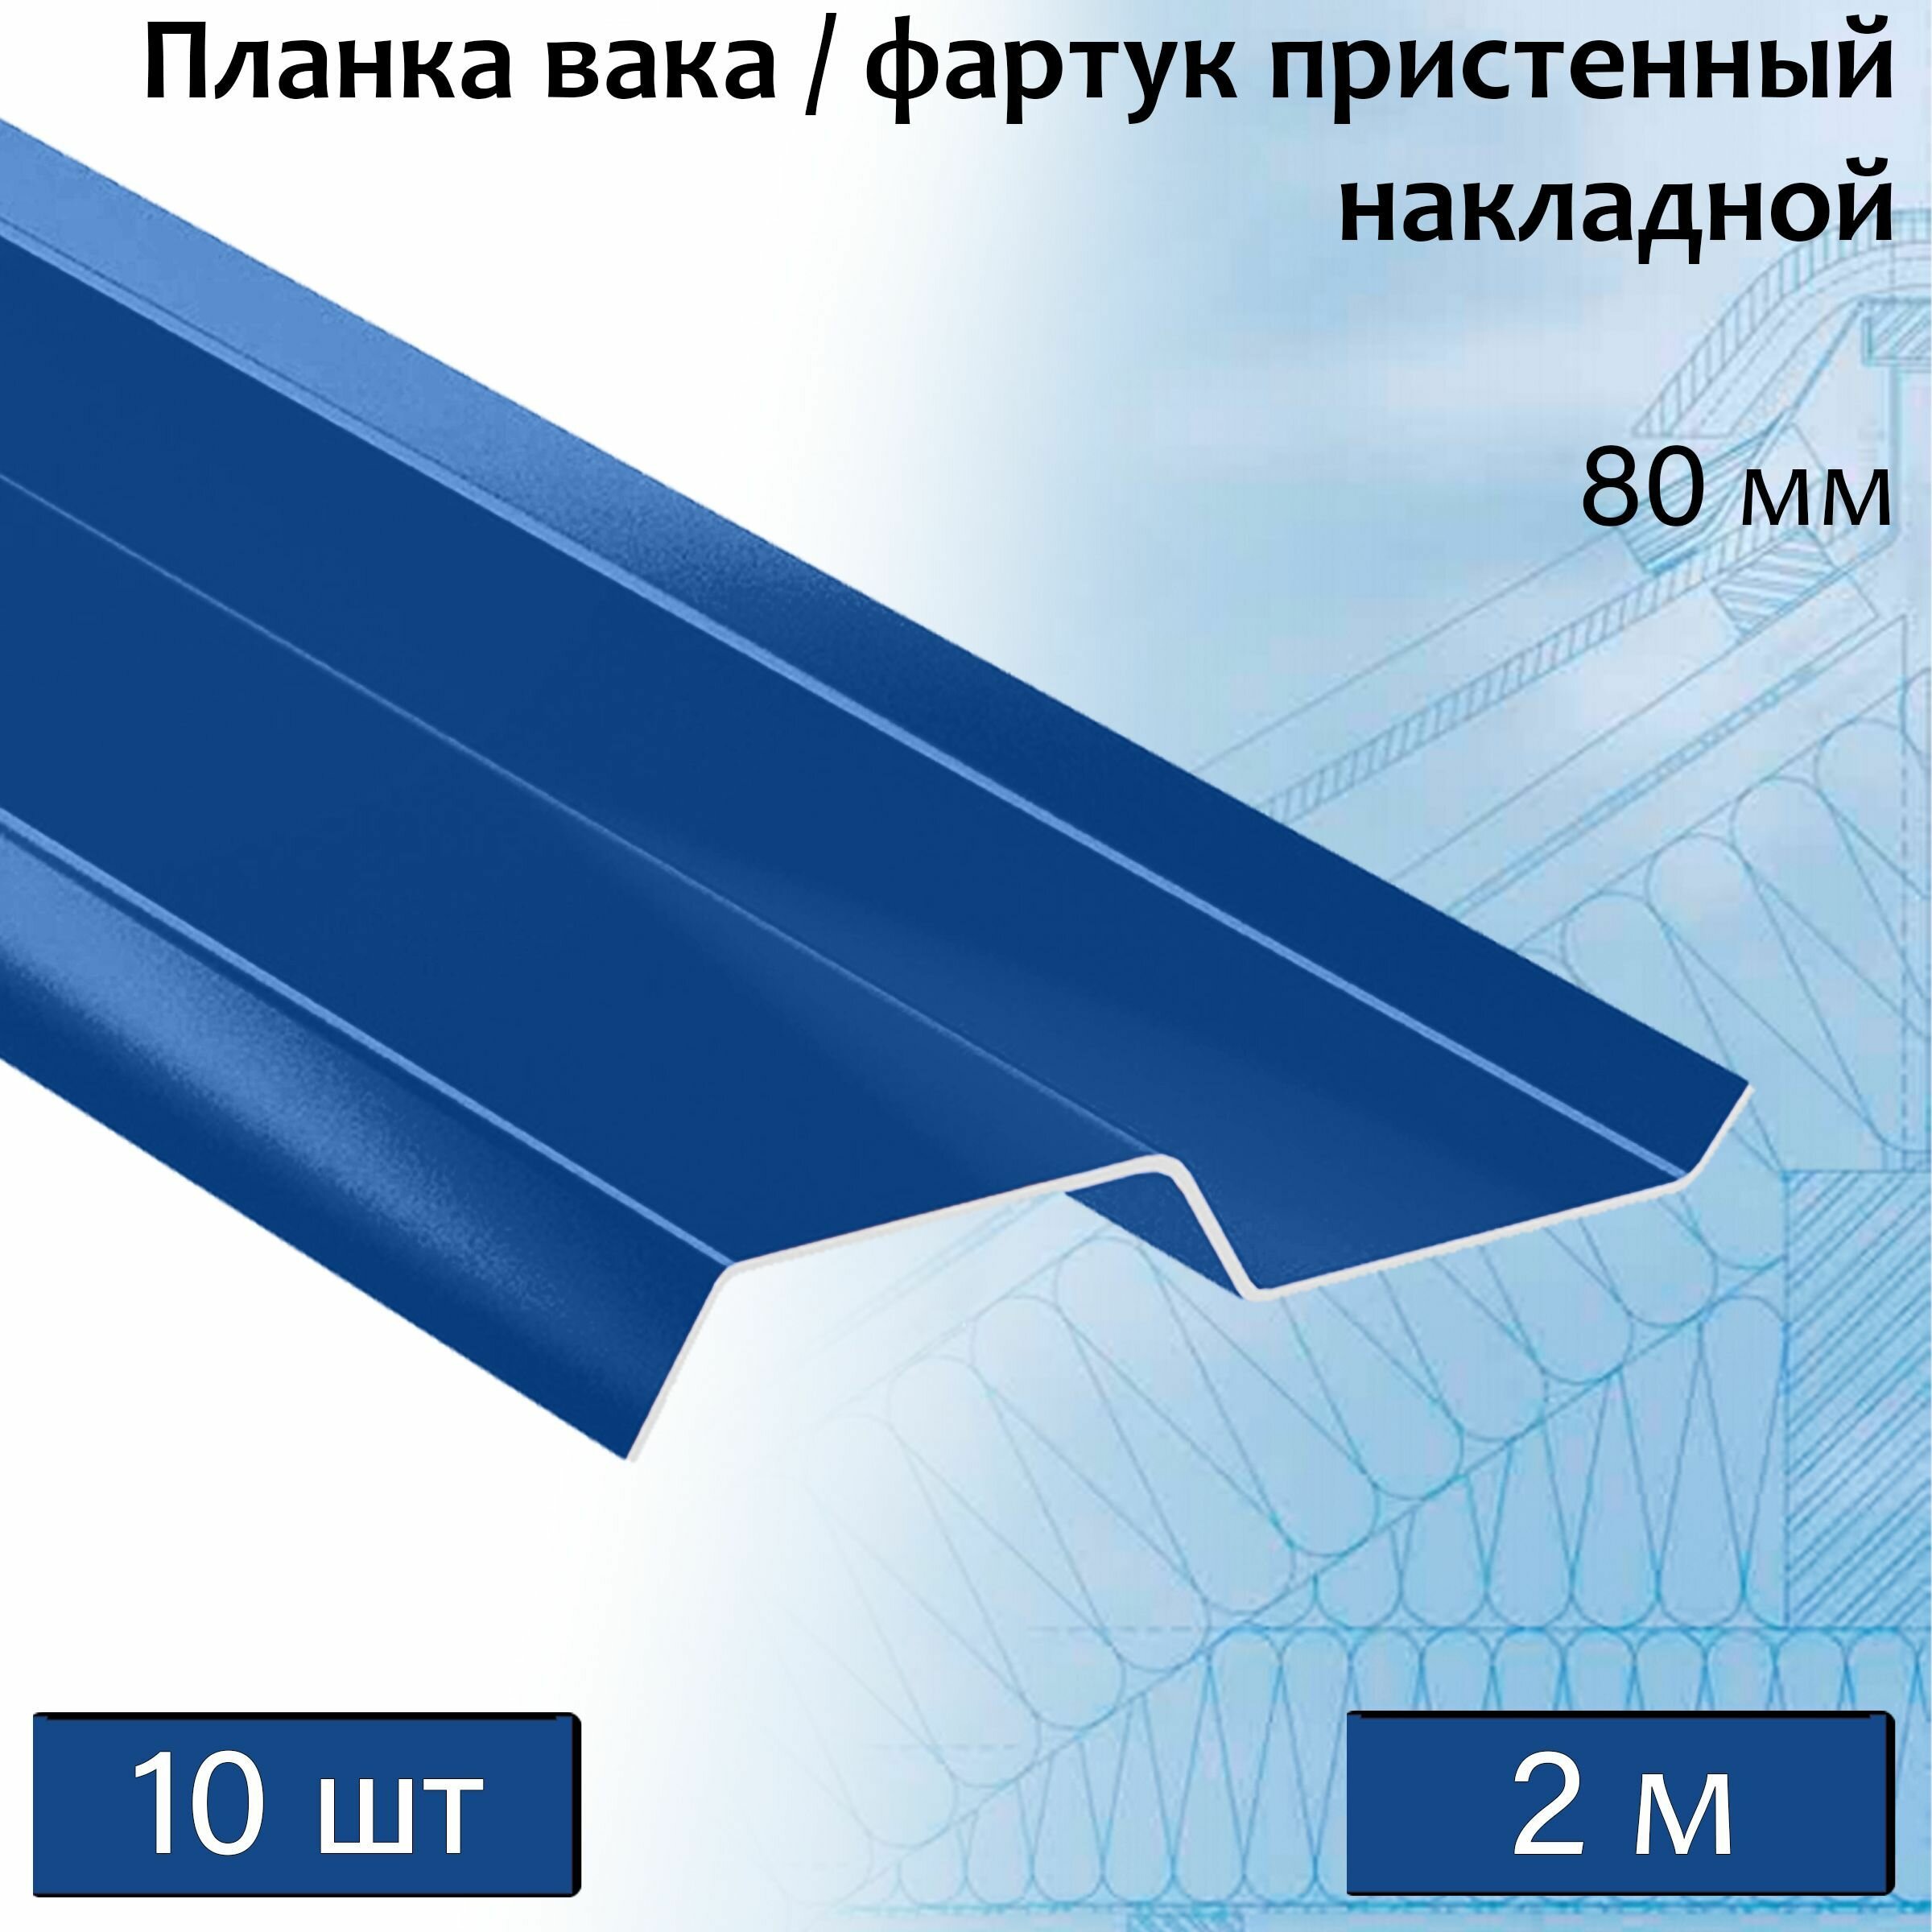 Планка вака 80 мм (RAL 5005) 2 м 10 штук фартук пристенный накладной синий - фотография № 1